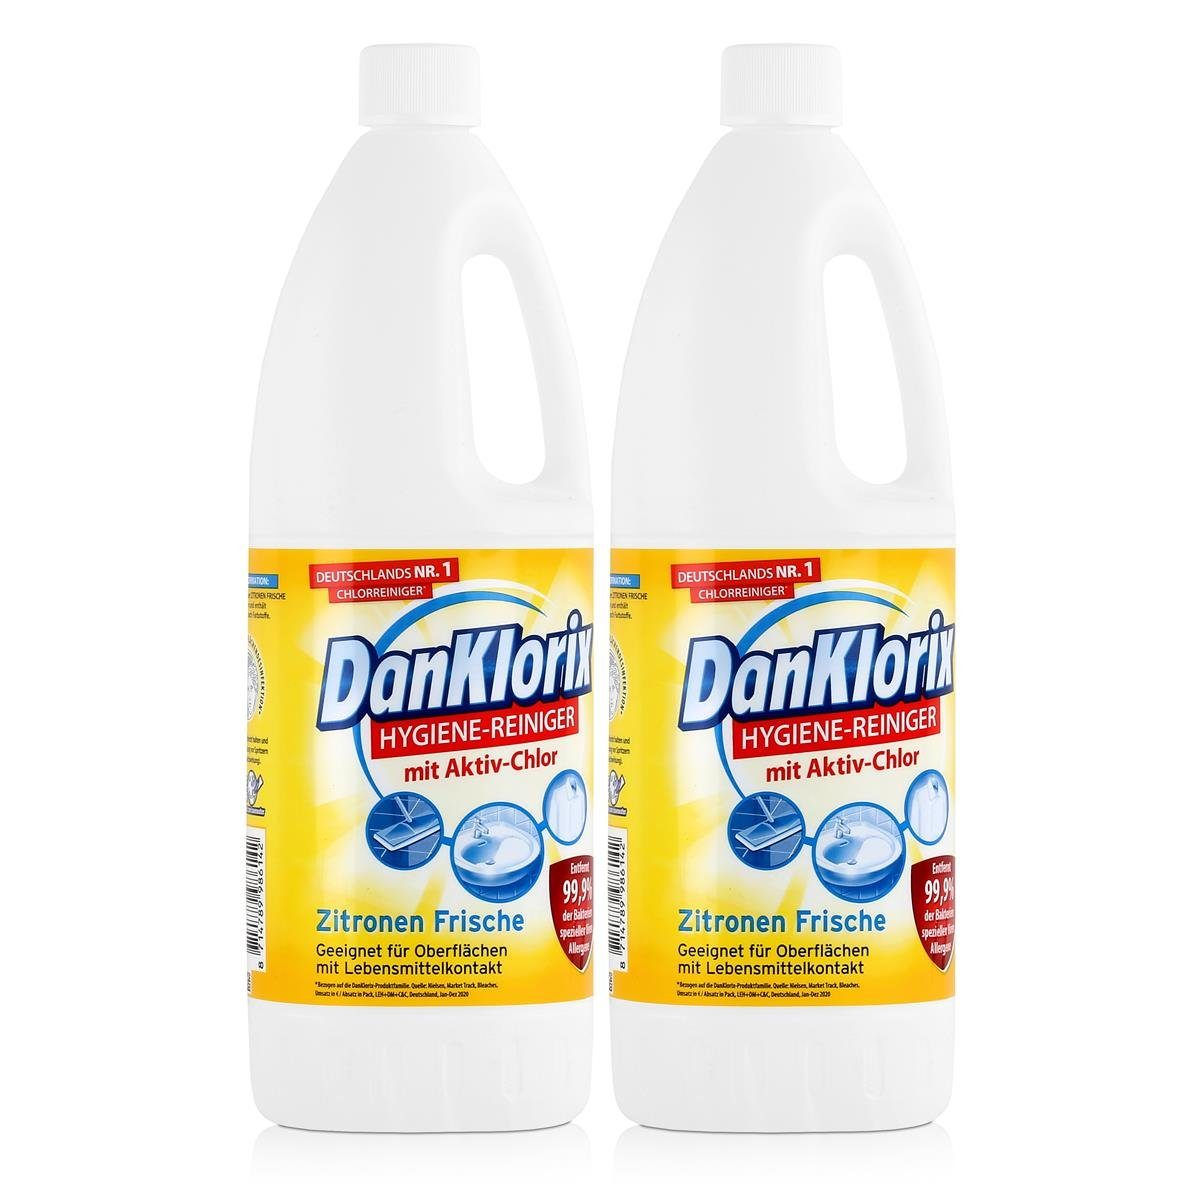 DanKlorix DanKlorix Hygiene-Reiniger - Aktiv-Chlor WC-Reiniger Zitronen Frische (2e 1,5L Mit